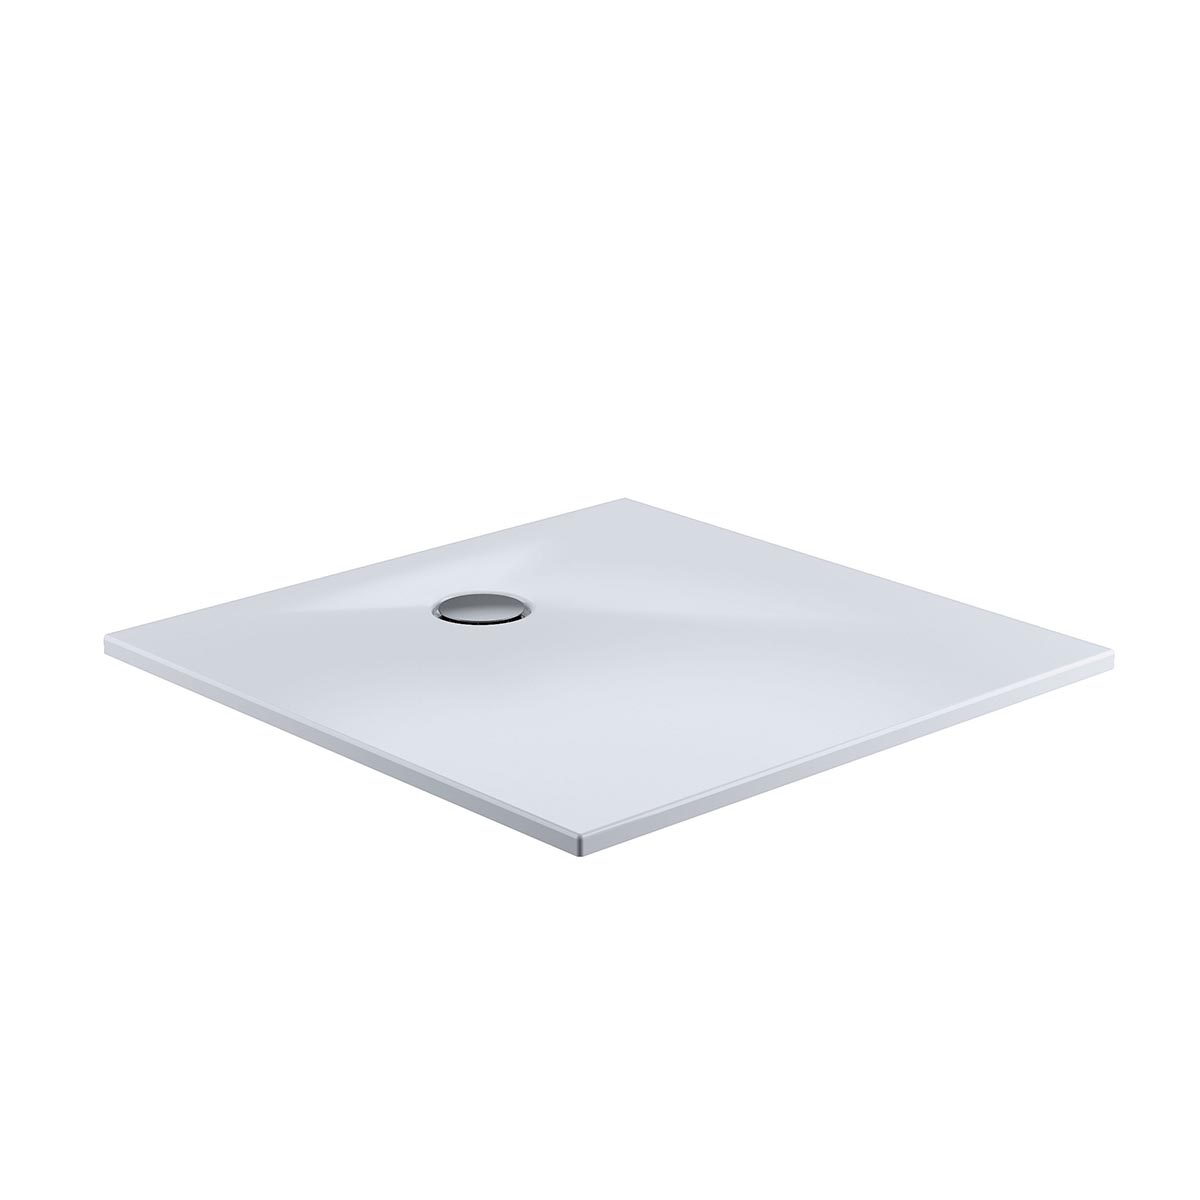 HSK Marmor-Polymer Quadrat Duschwanne plan-Weiß-120 x 120 cm-ohne AntiSlip-Beschichtung-mit Aquaproof-Dichtset